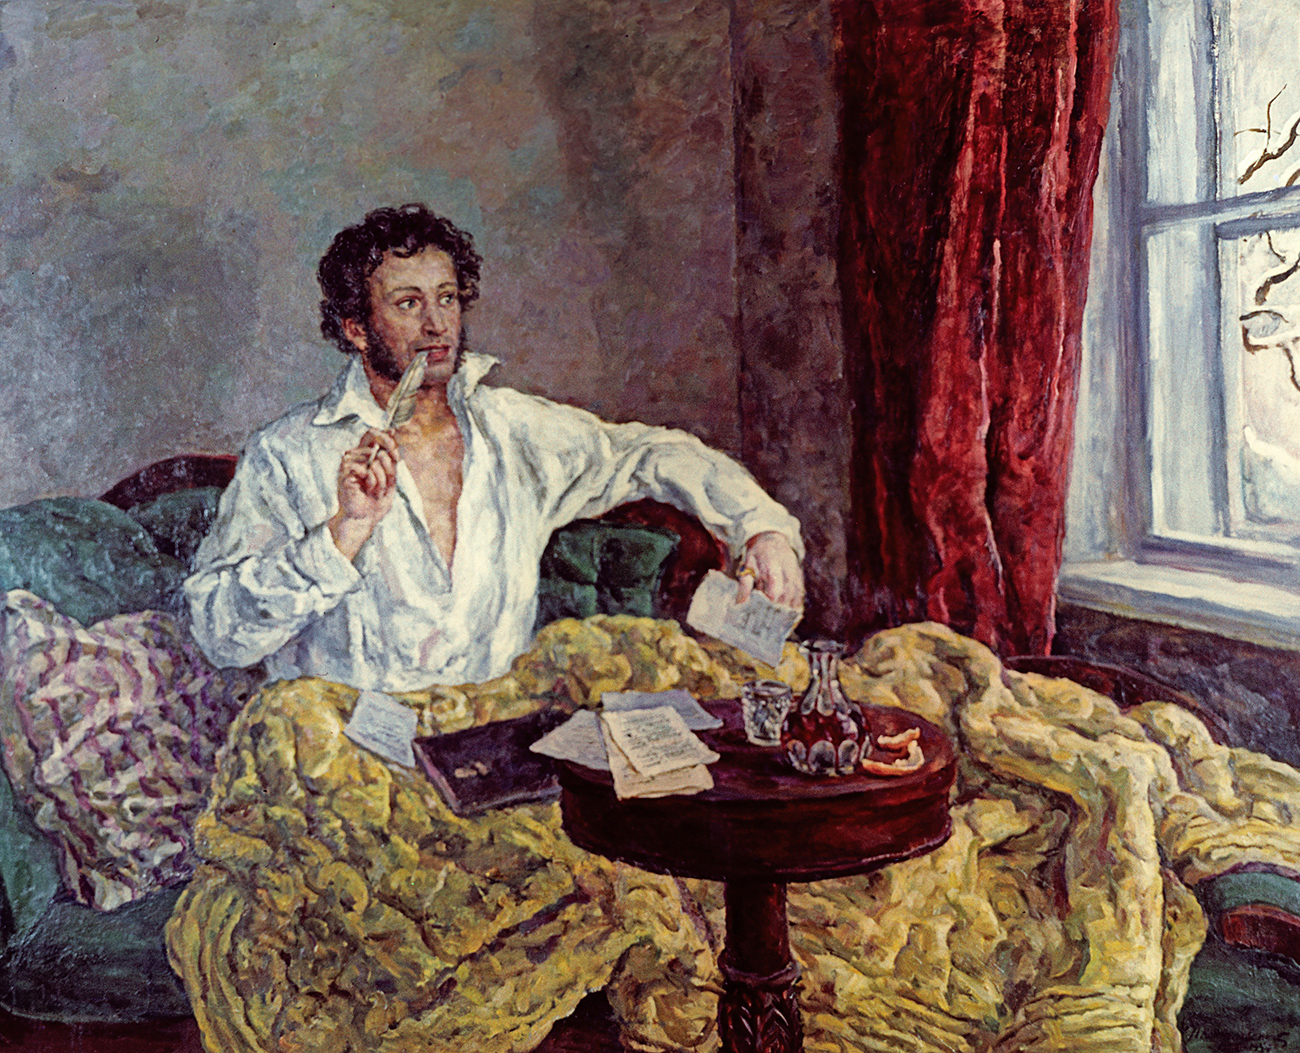 "Retrato de aleksandr Púchkin" (1932), por Kontchalovski